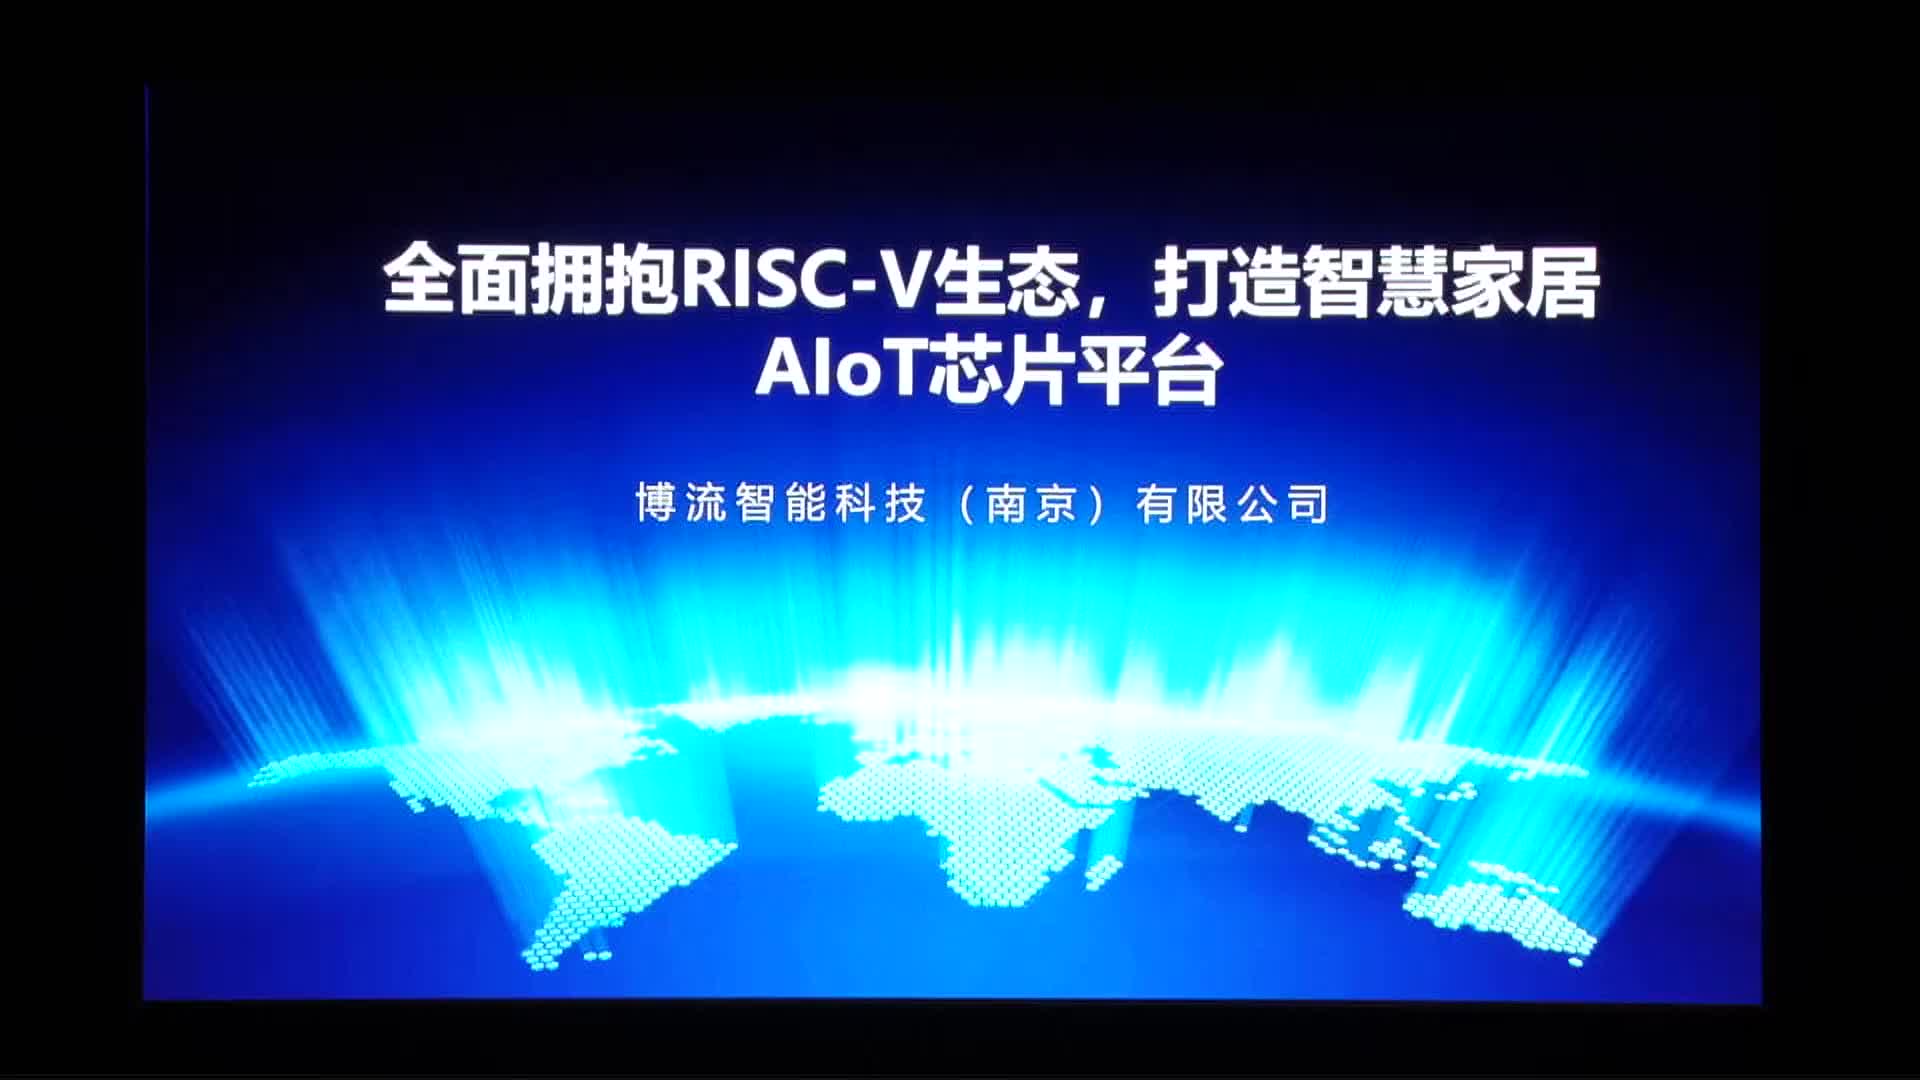 全面拥抱RISC-V生态，打造智慧家居AIoT芯片平台 - 刘占领 - 博流智能 -